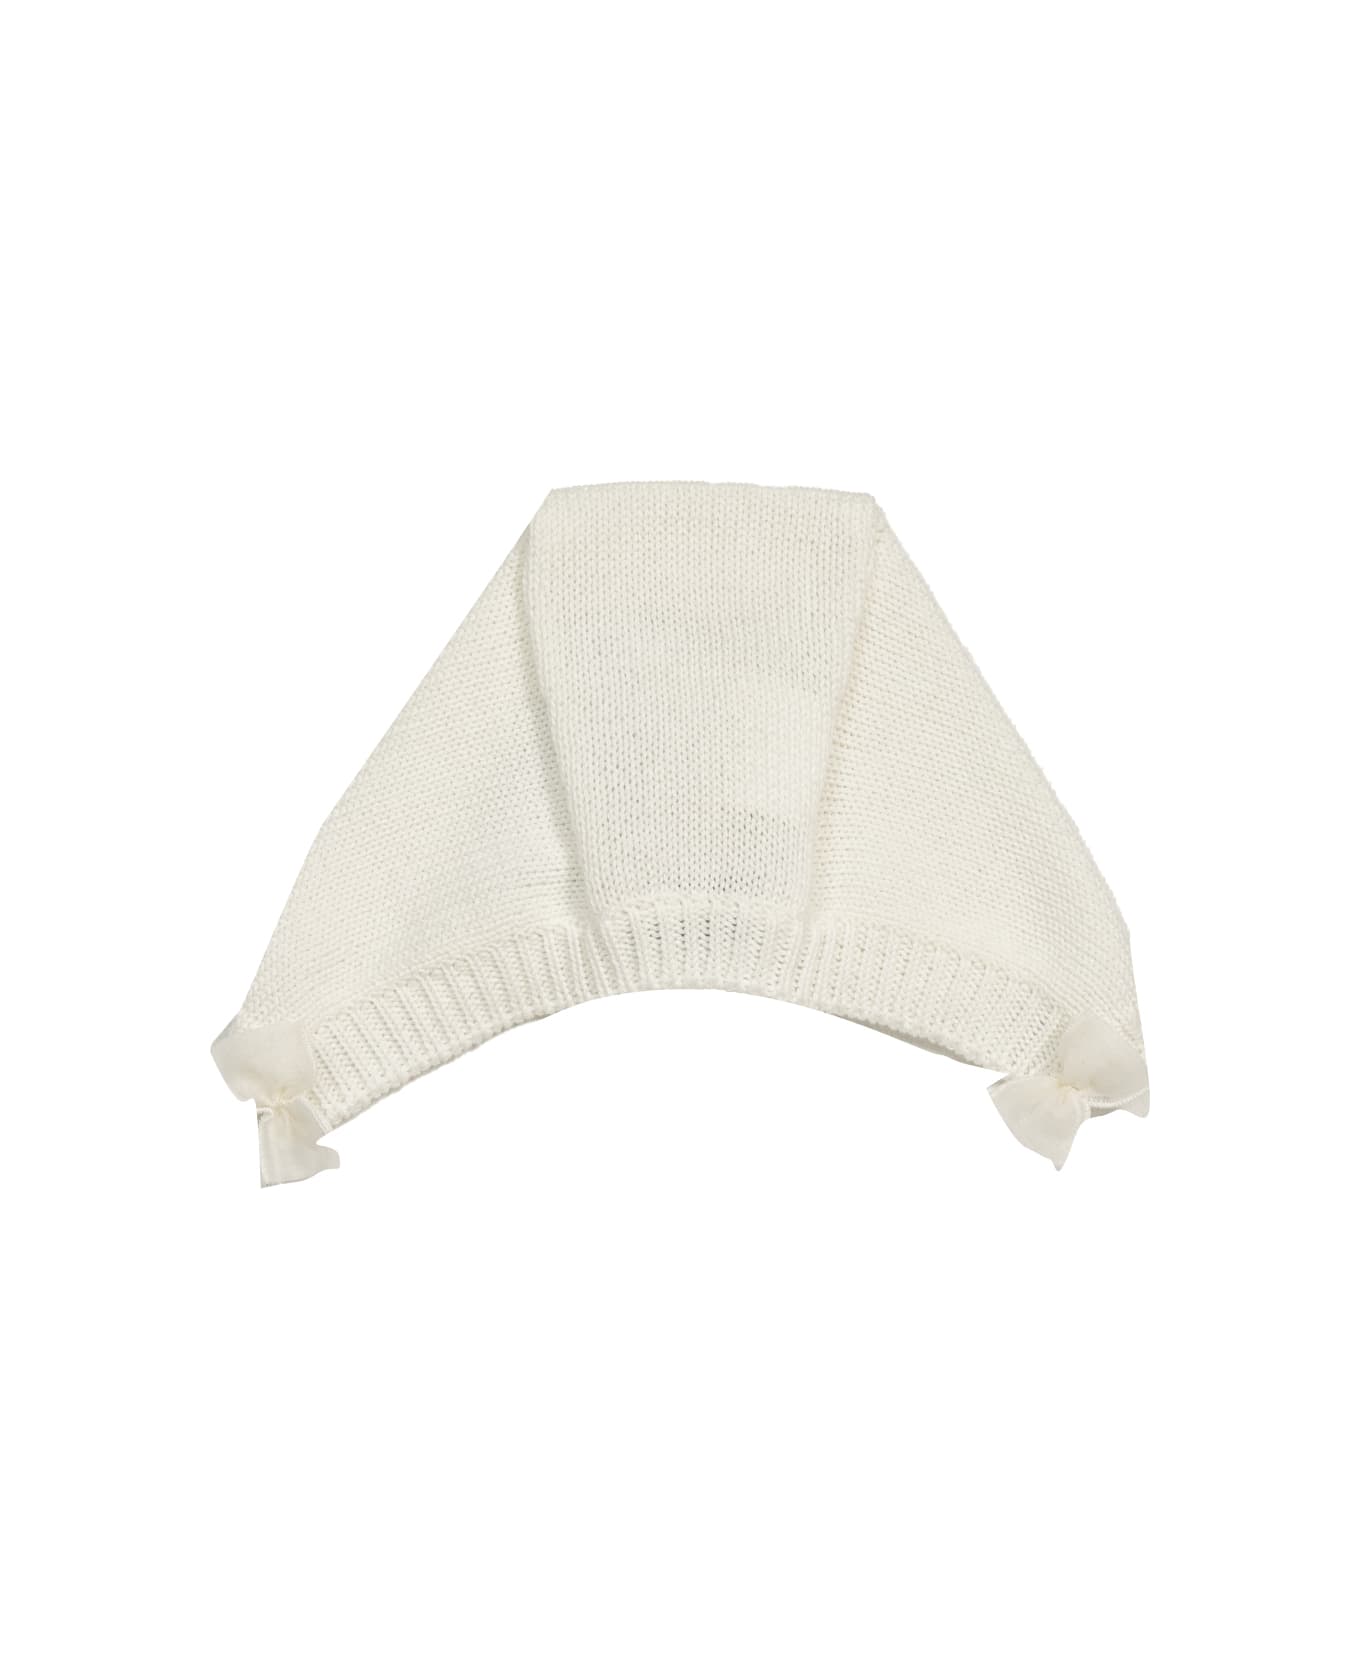 Piccola Giuggiola Cotton Knit Ear Cap - White